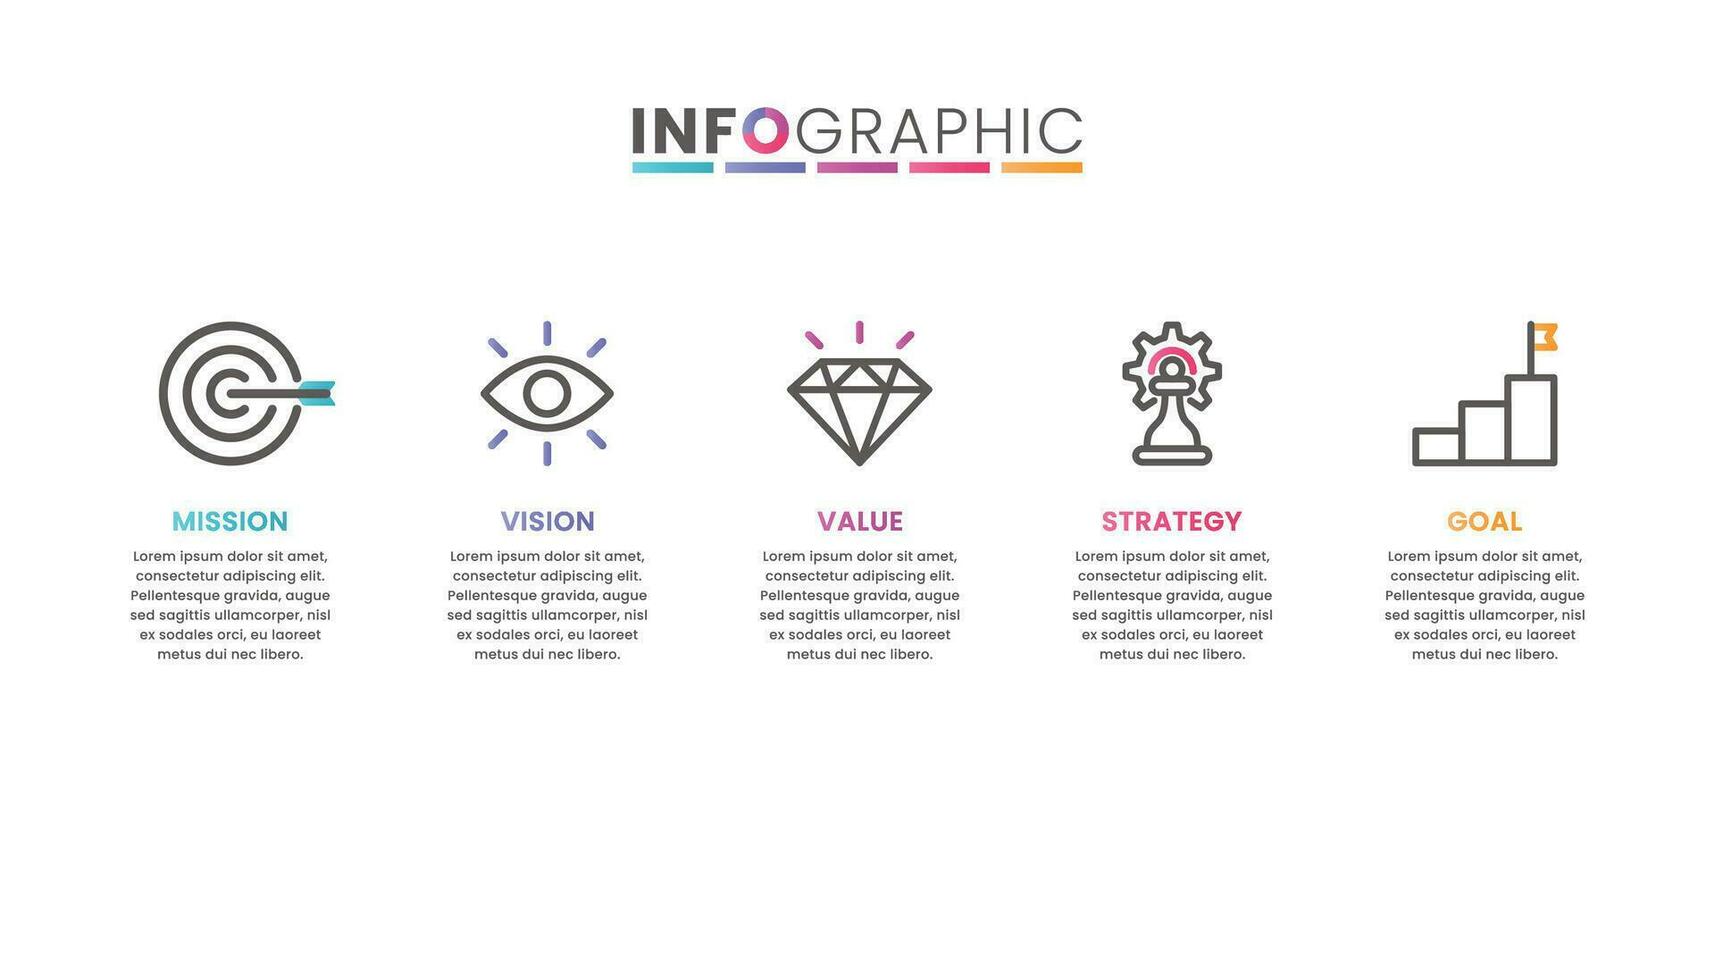 uppdrag, syn, värde, strategi och mål av företag med text. företag infographic vektor